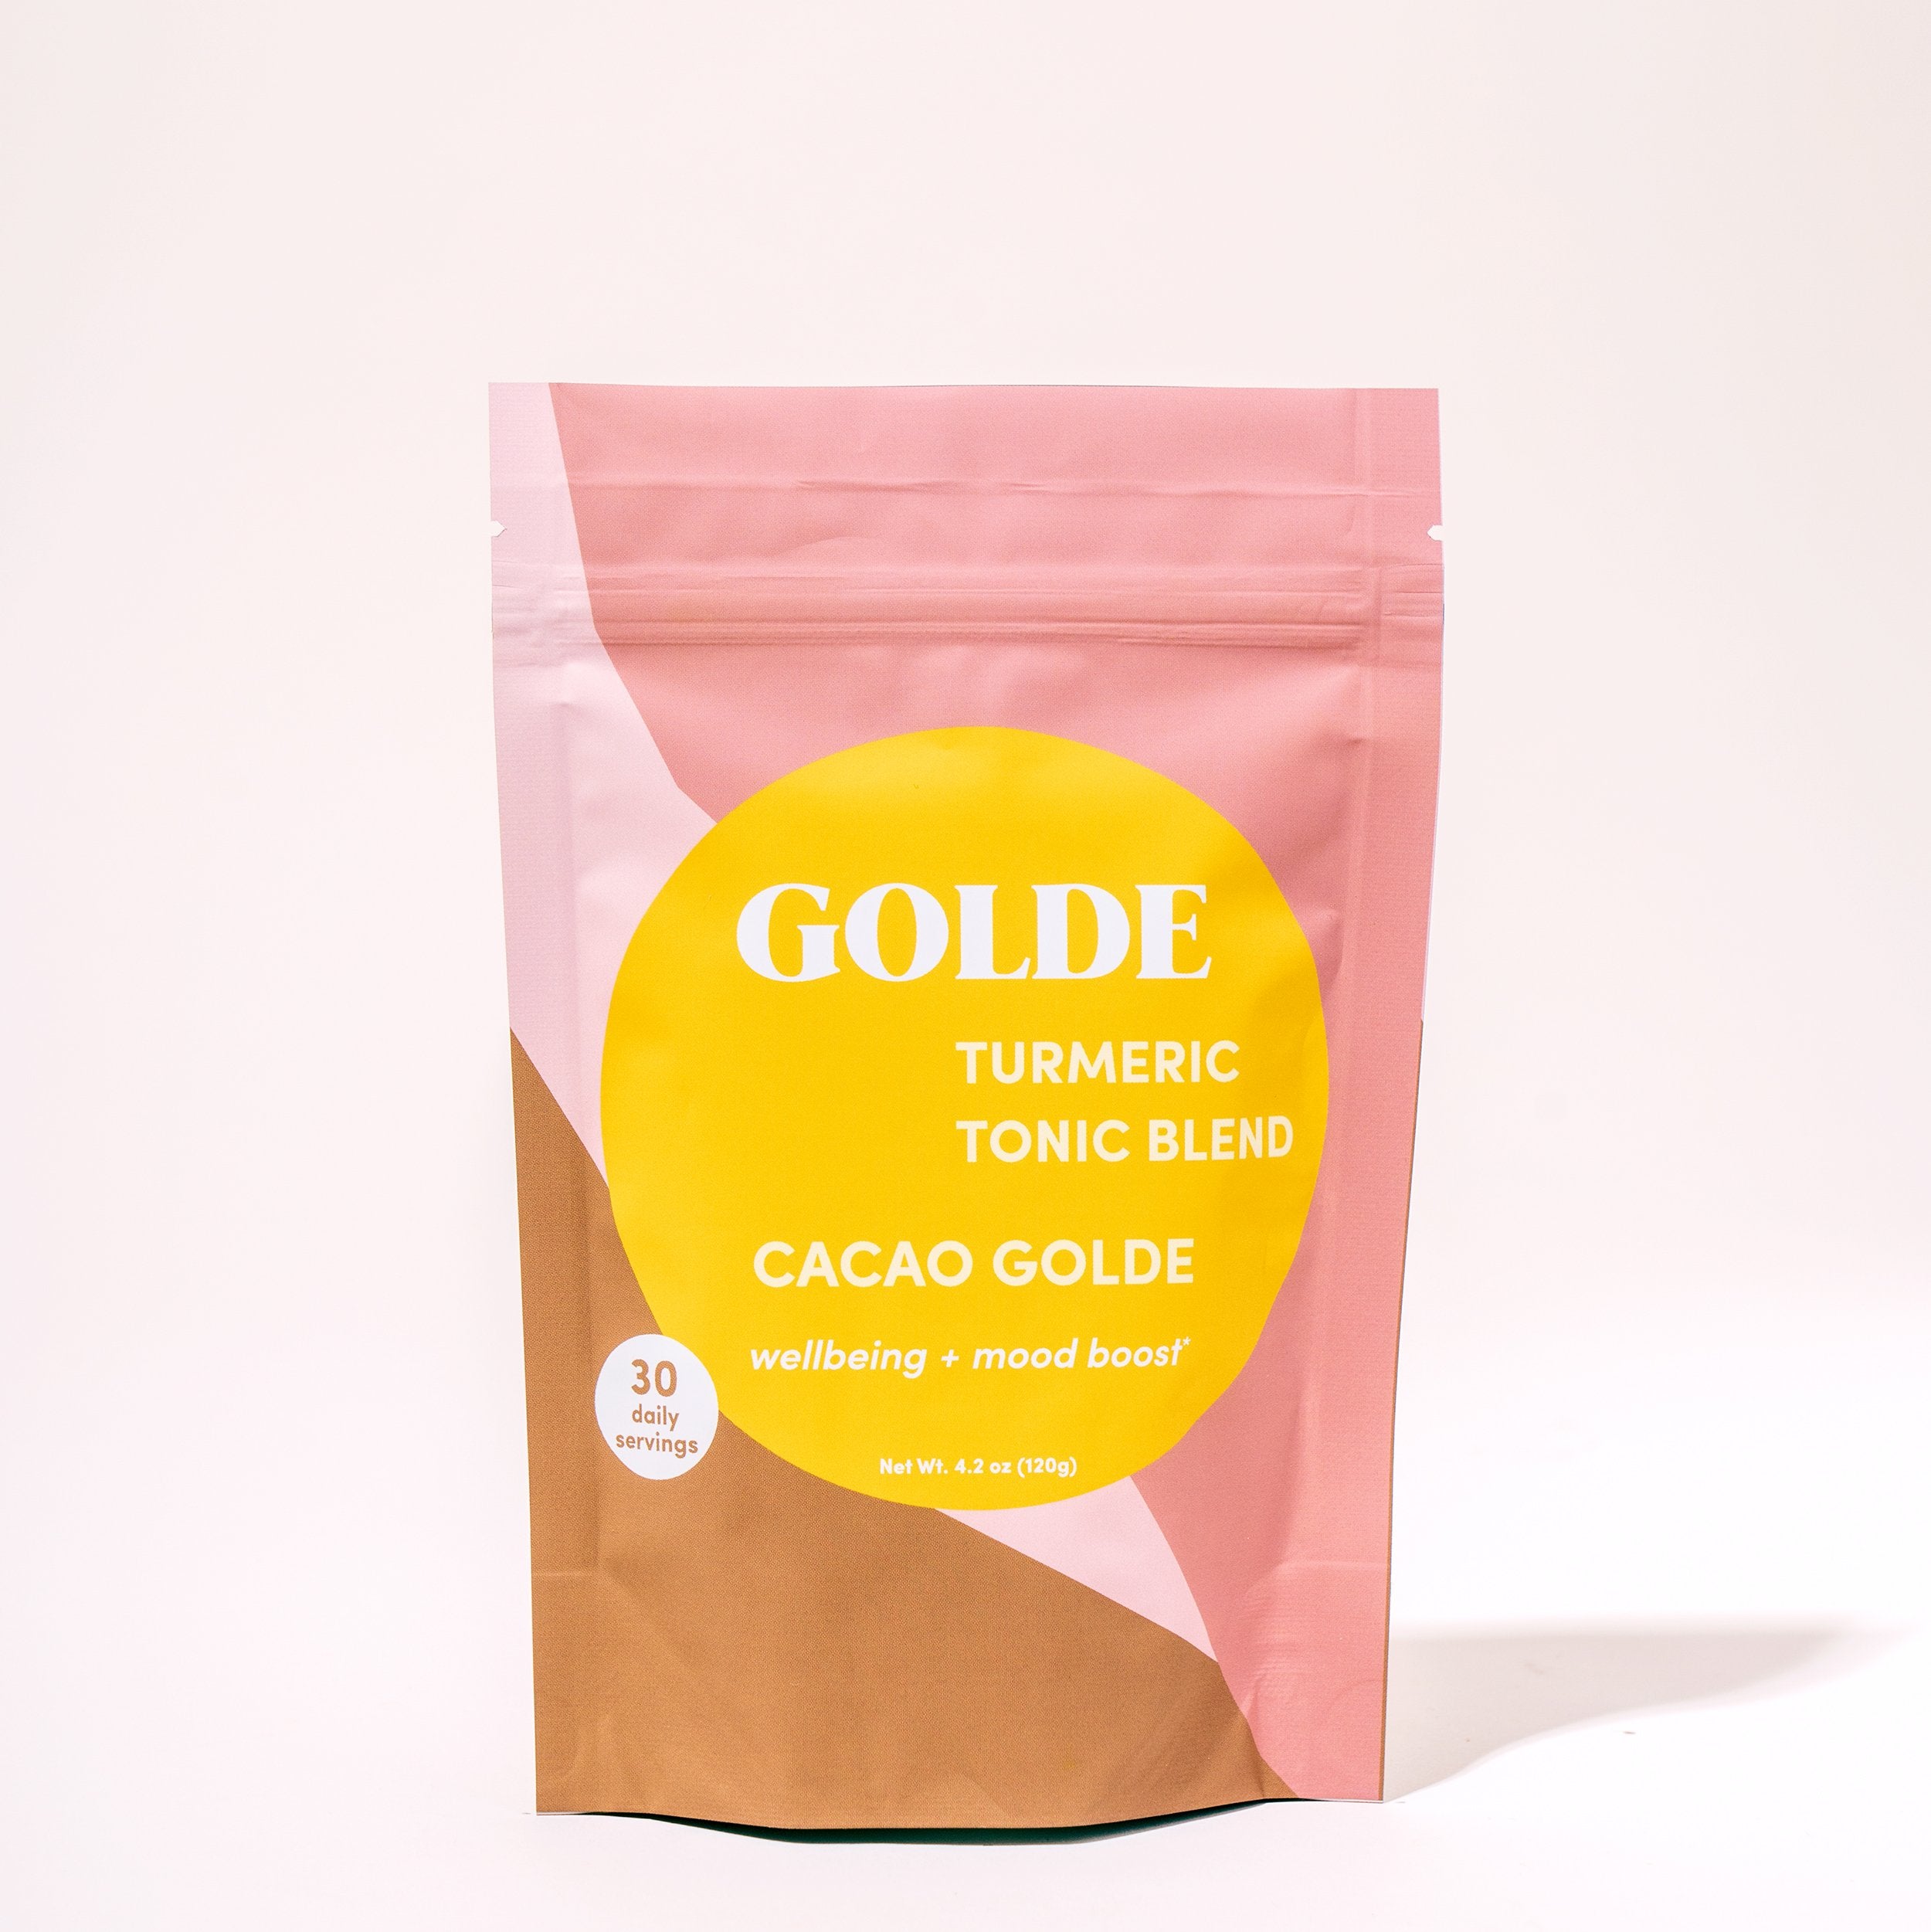 Cacao GOLDE